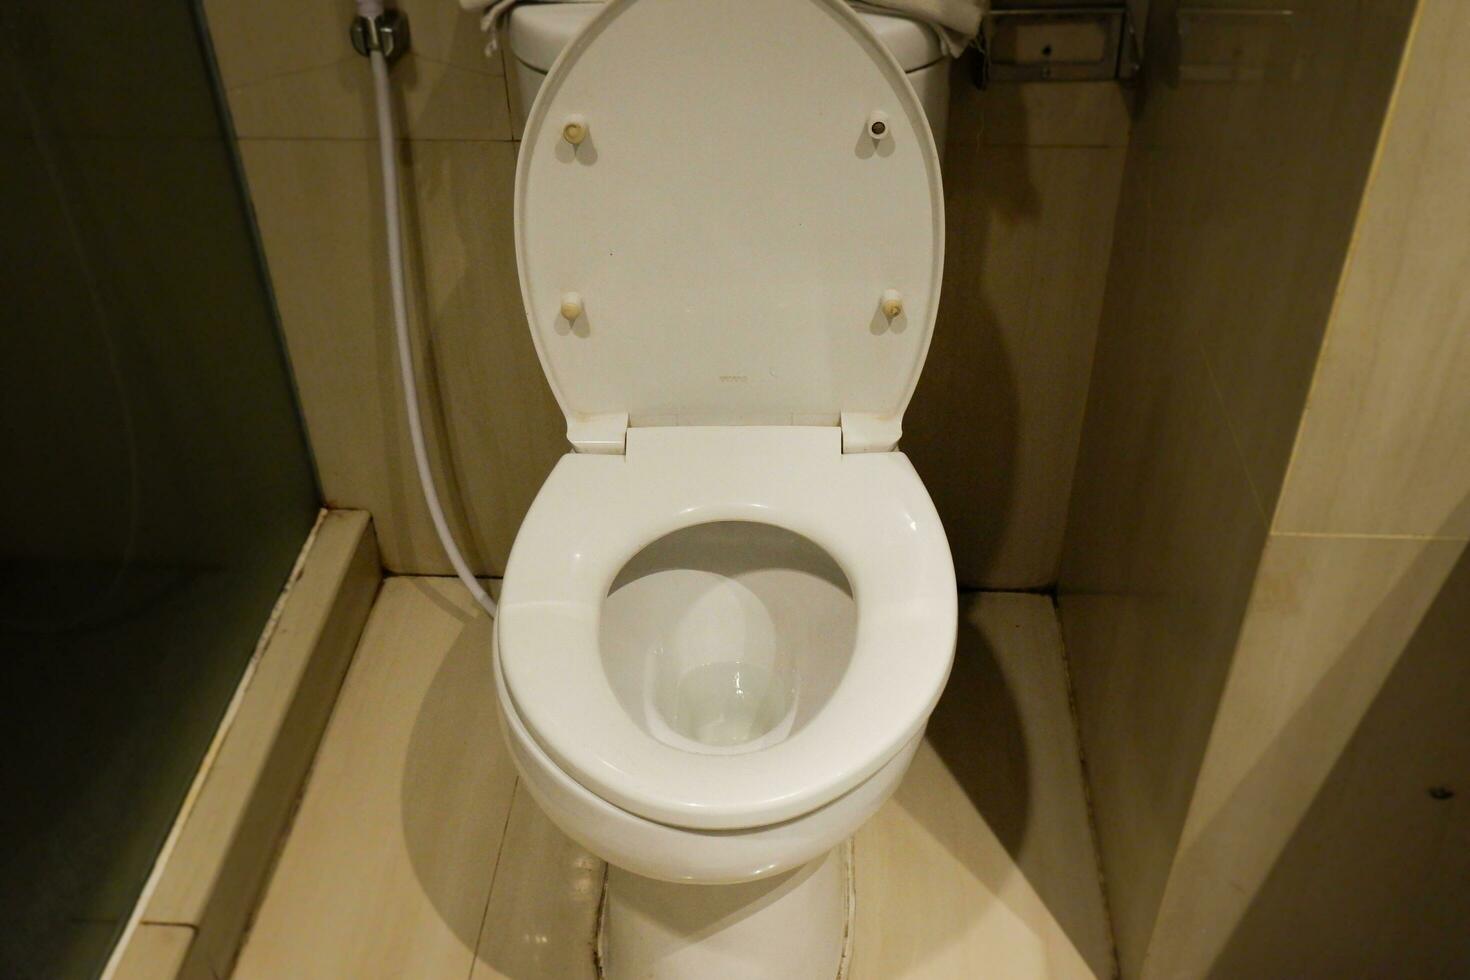 uma sentado banheiro dentro a banheiro este é frequentemente usava para defecação foto